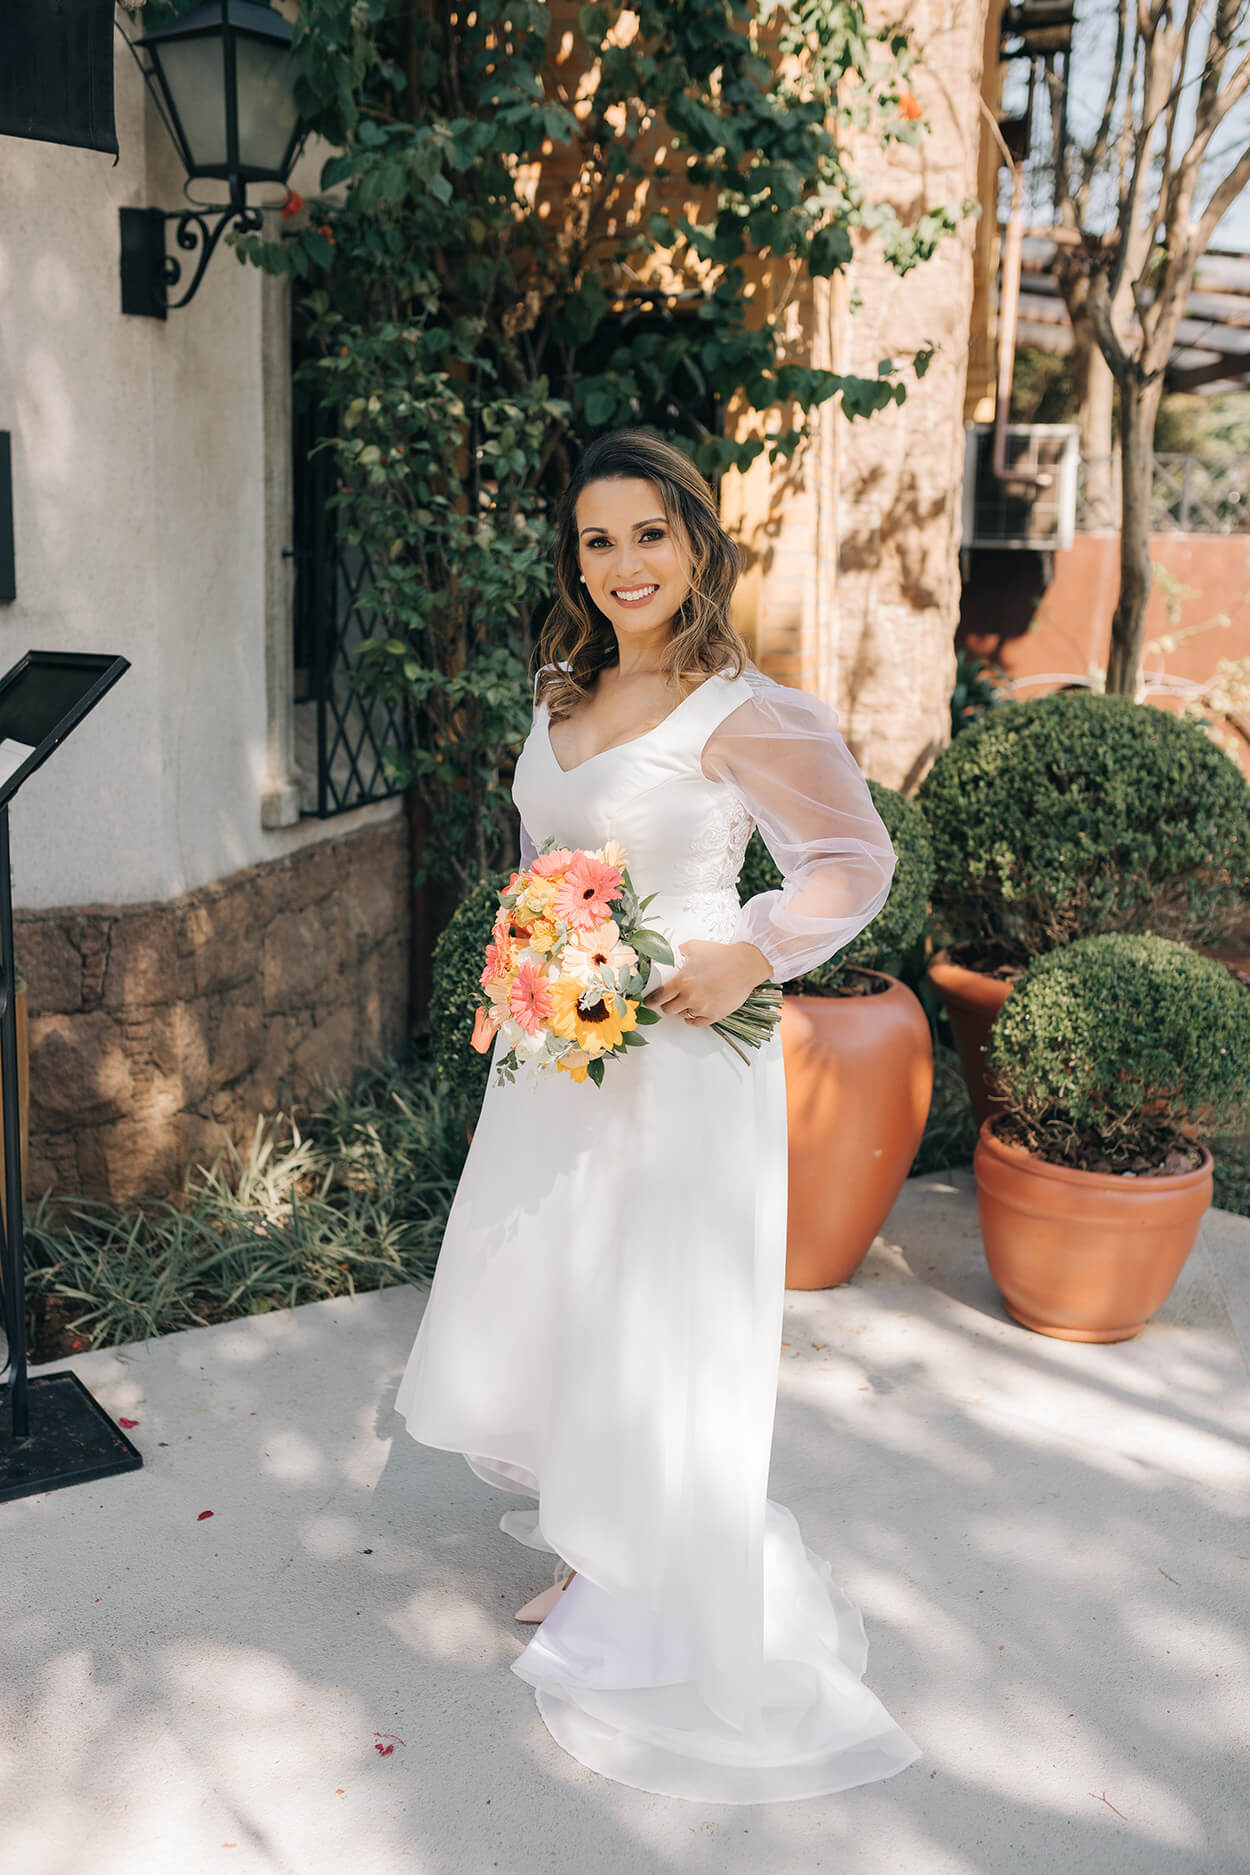 Mulher com vestido de noiva com decote em v e mangas transparentes e bufantes segurando buquê com flores brancas, amarelas e cor de rosa